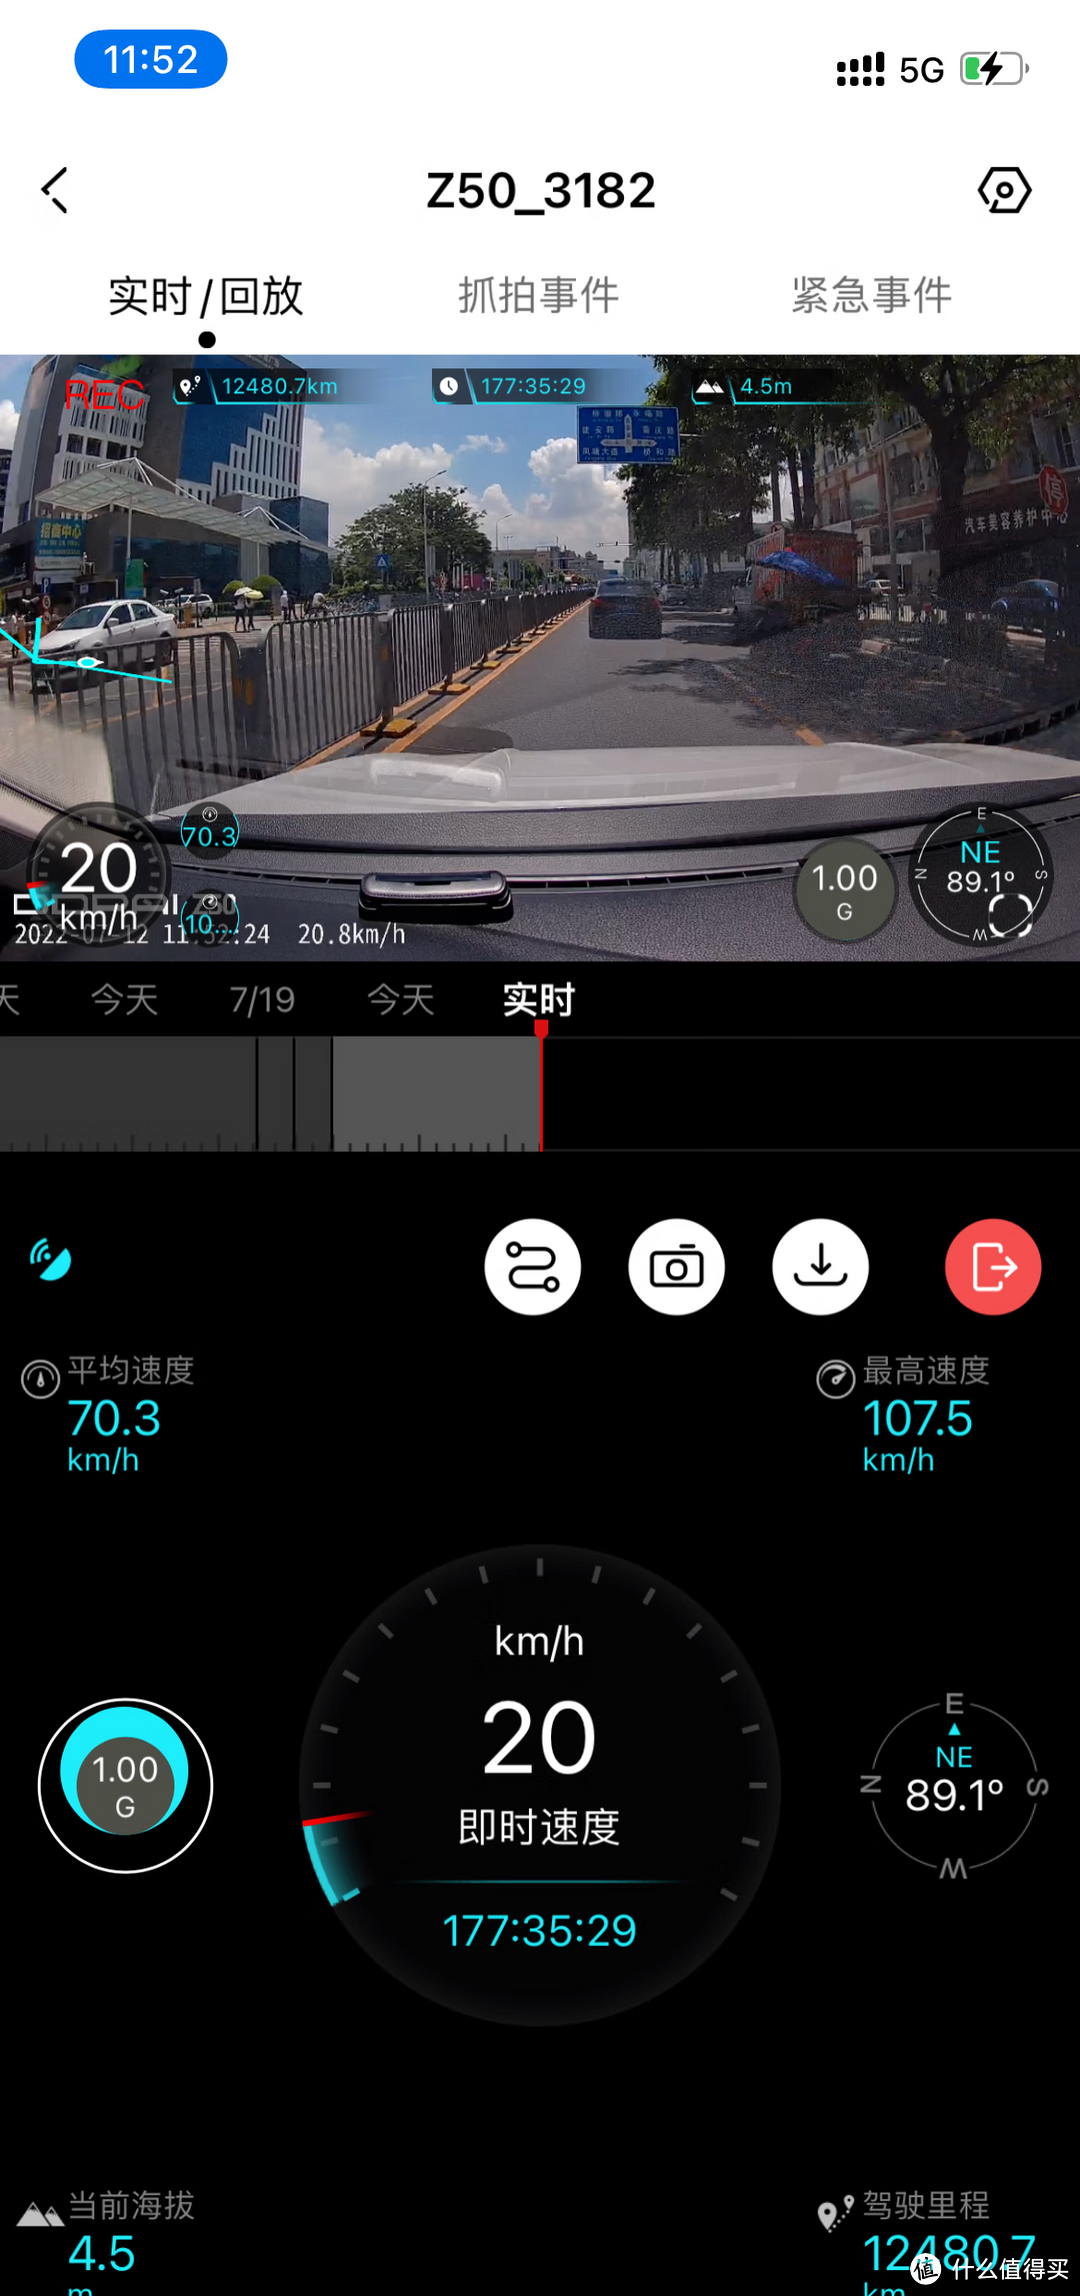 4K超清画质记录+双存储，盯盯拍行车记录仪体验真不错！